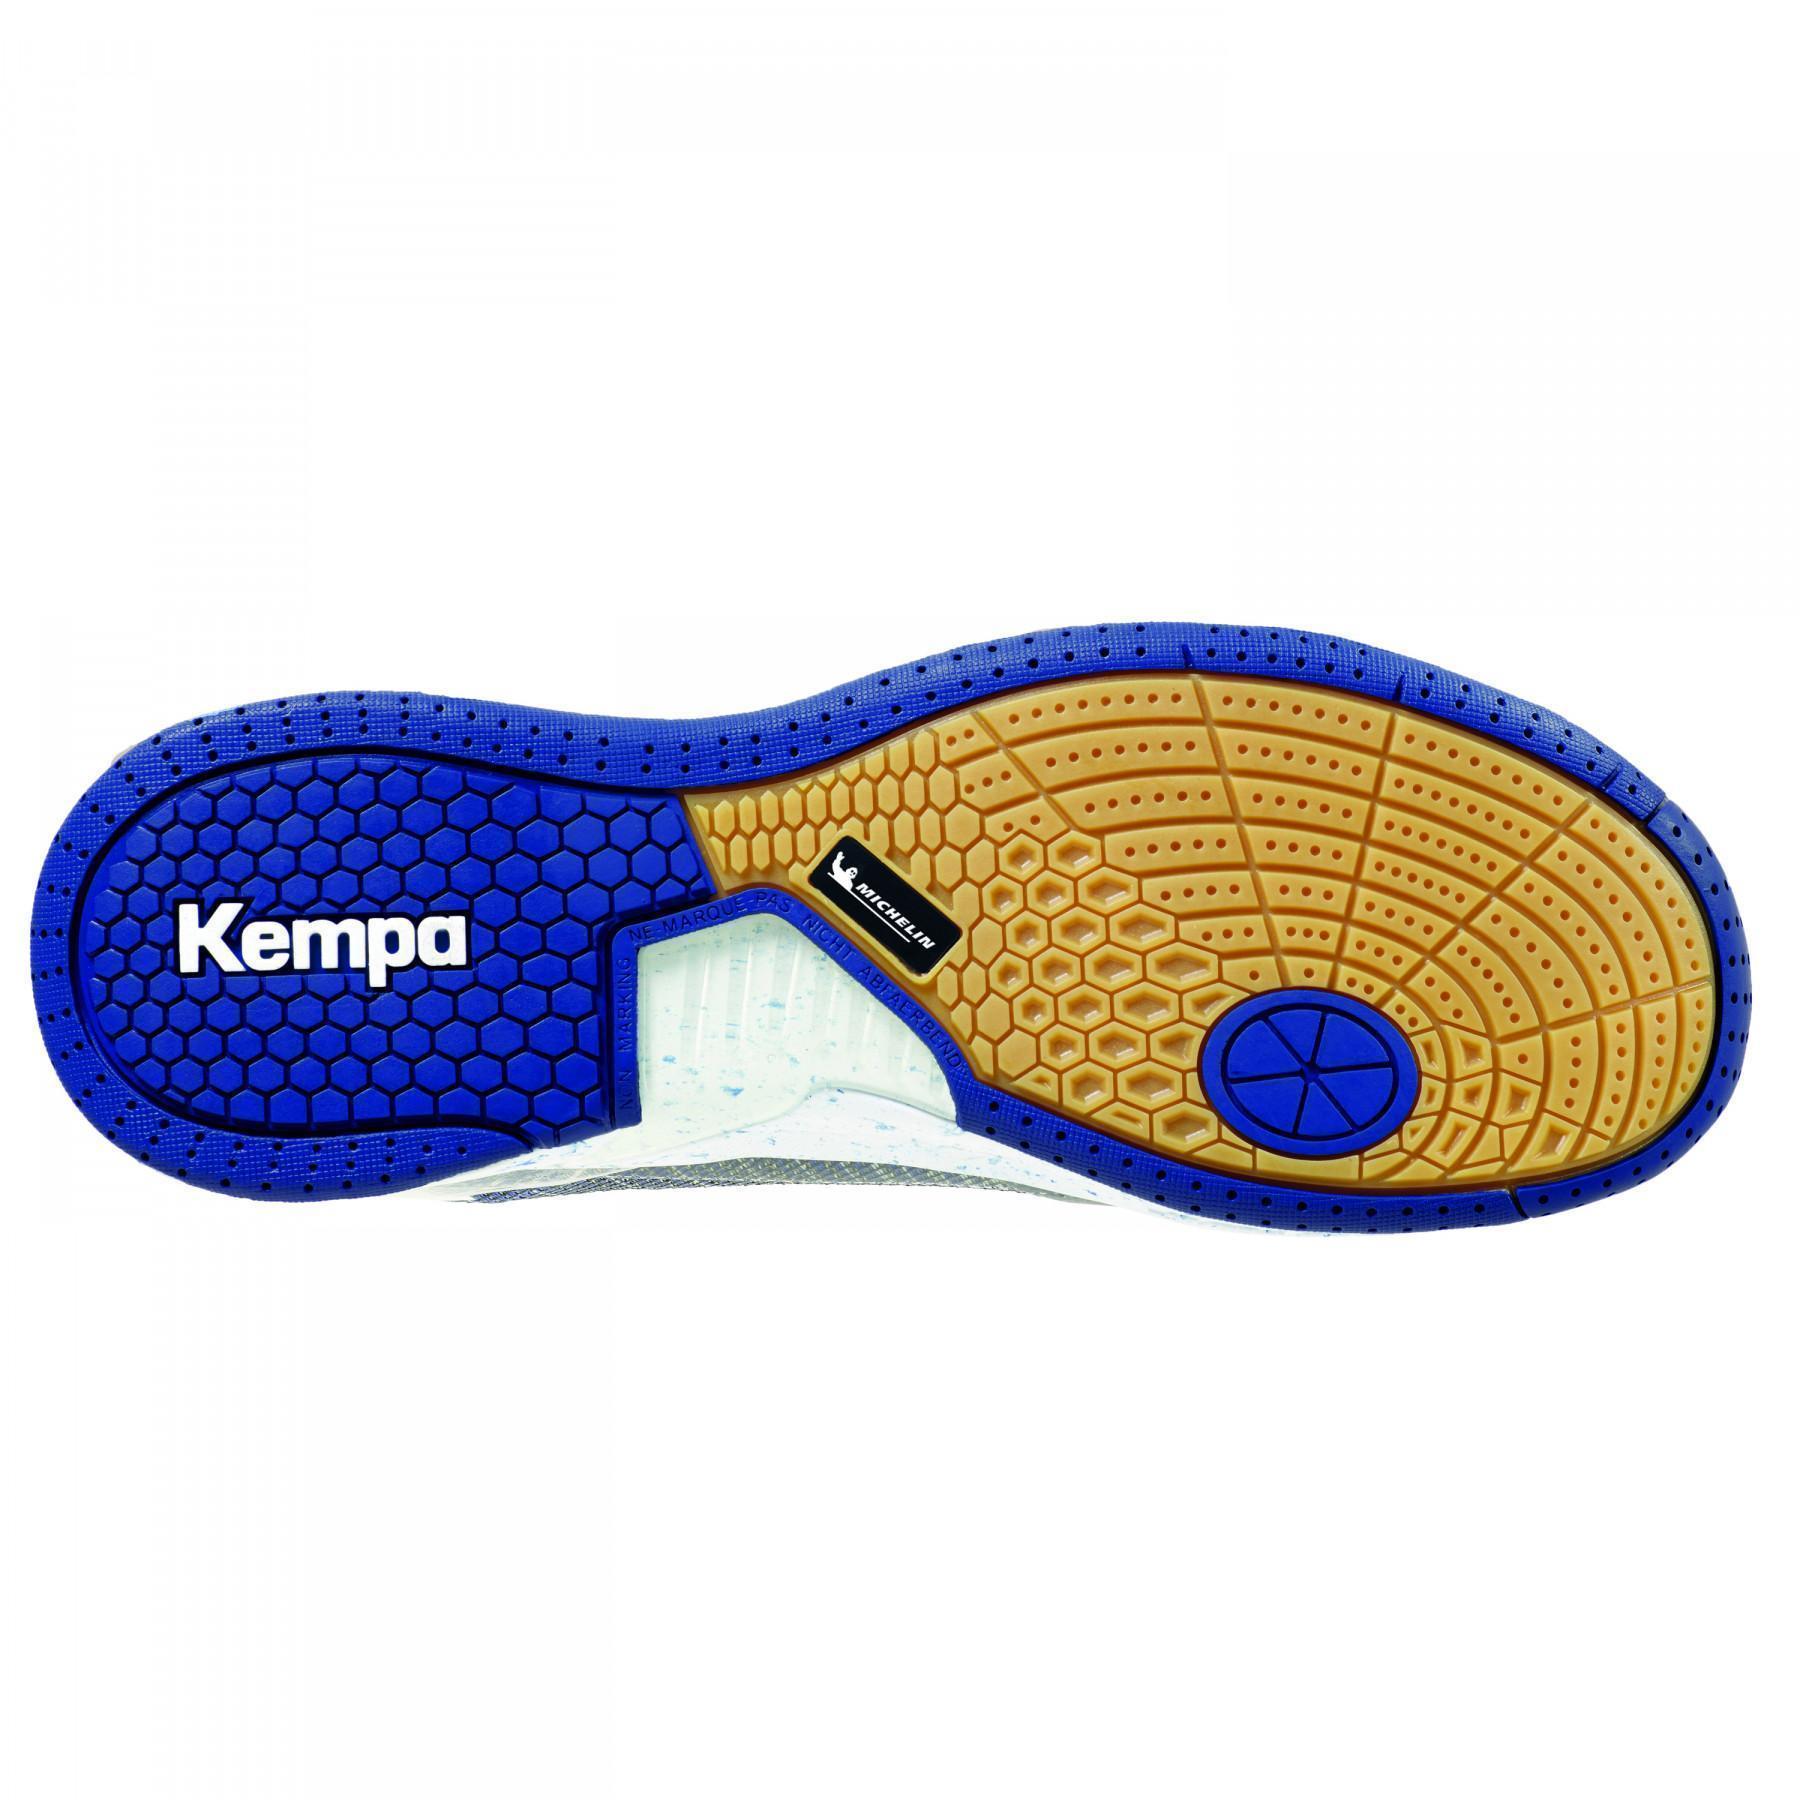 El zapato ataca a un contendiente Kempa